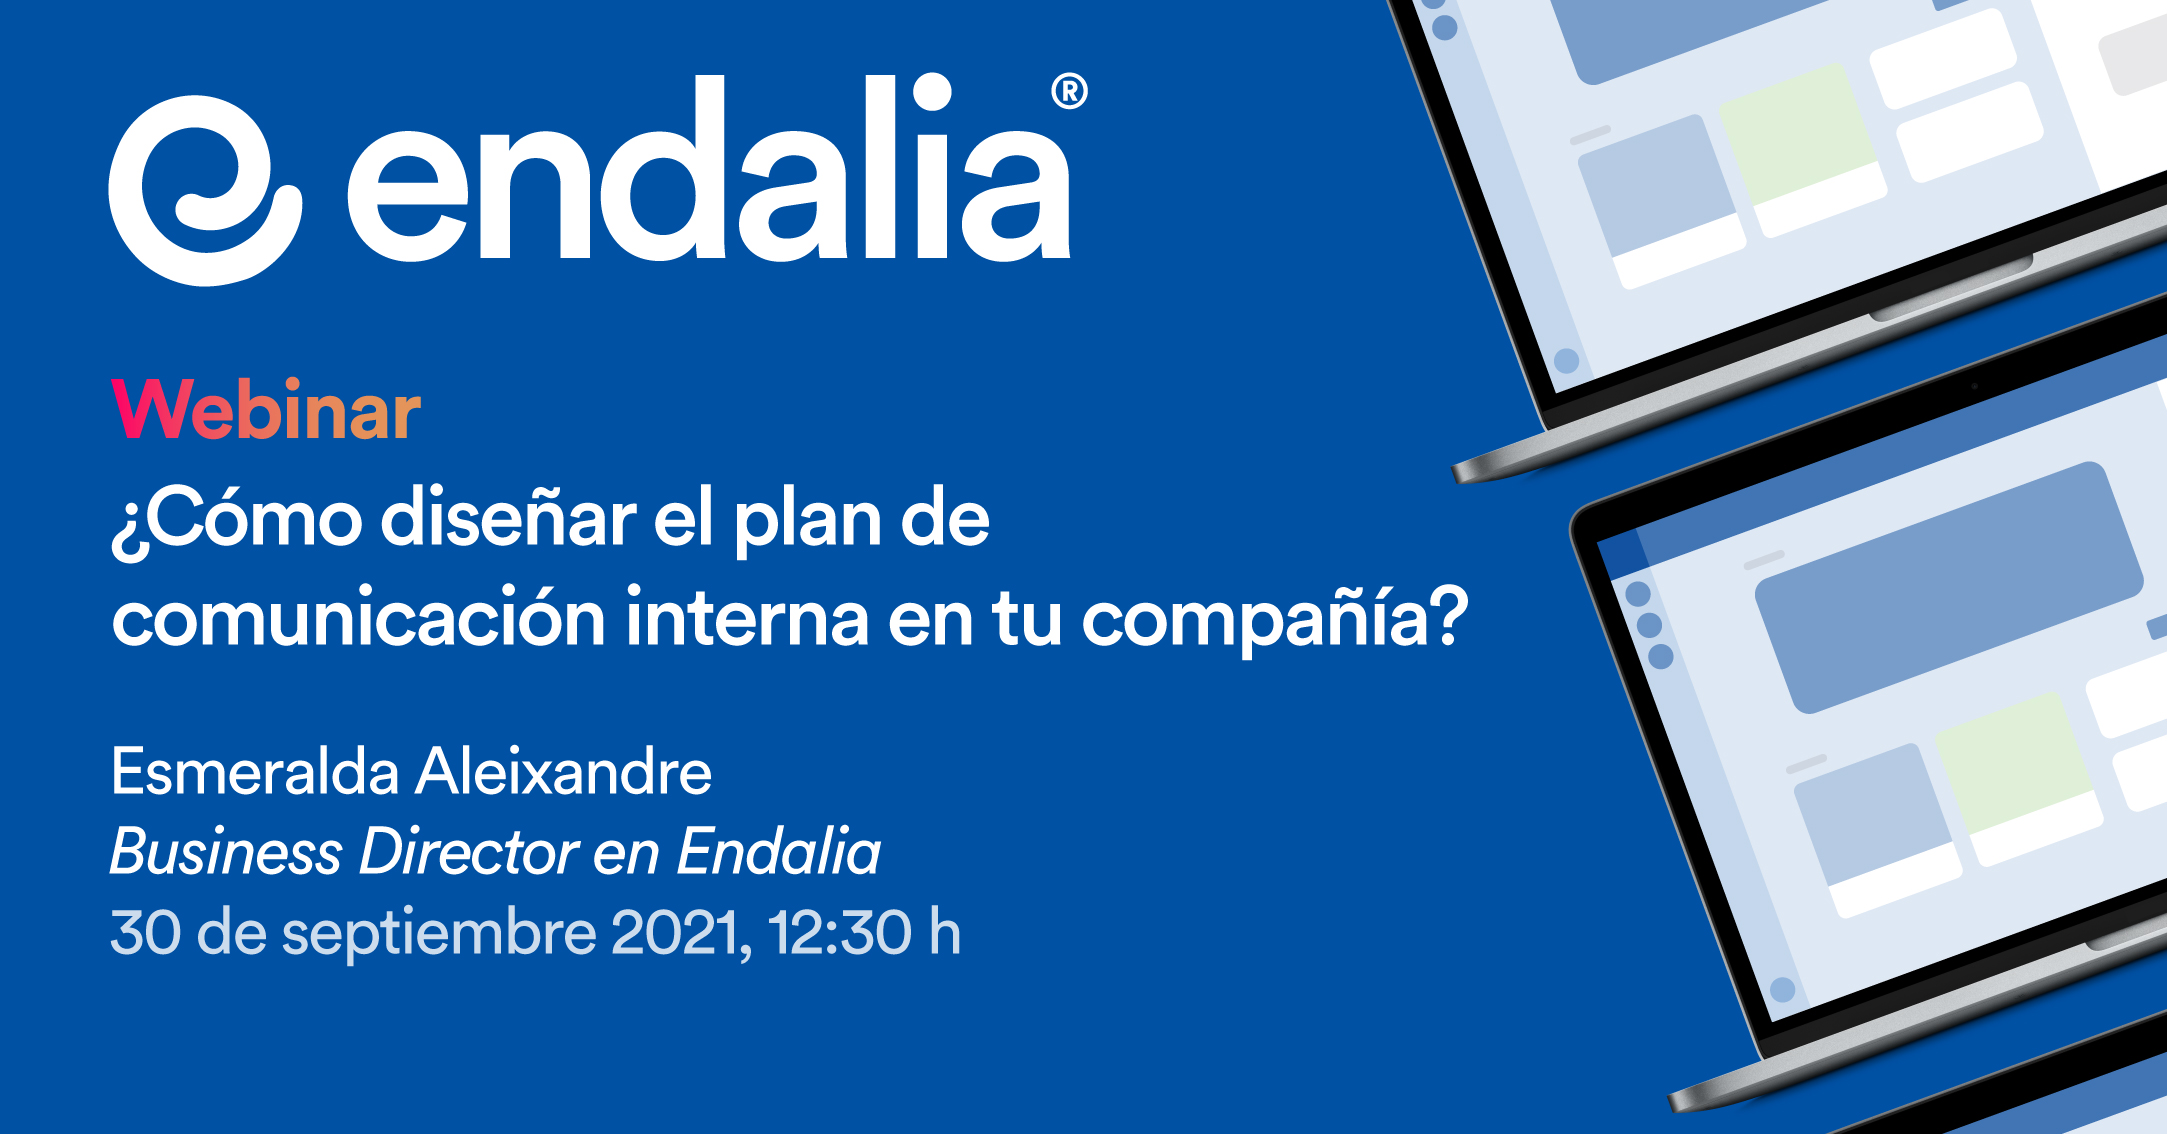 Webinar Endalia